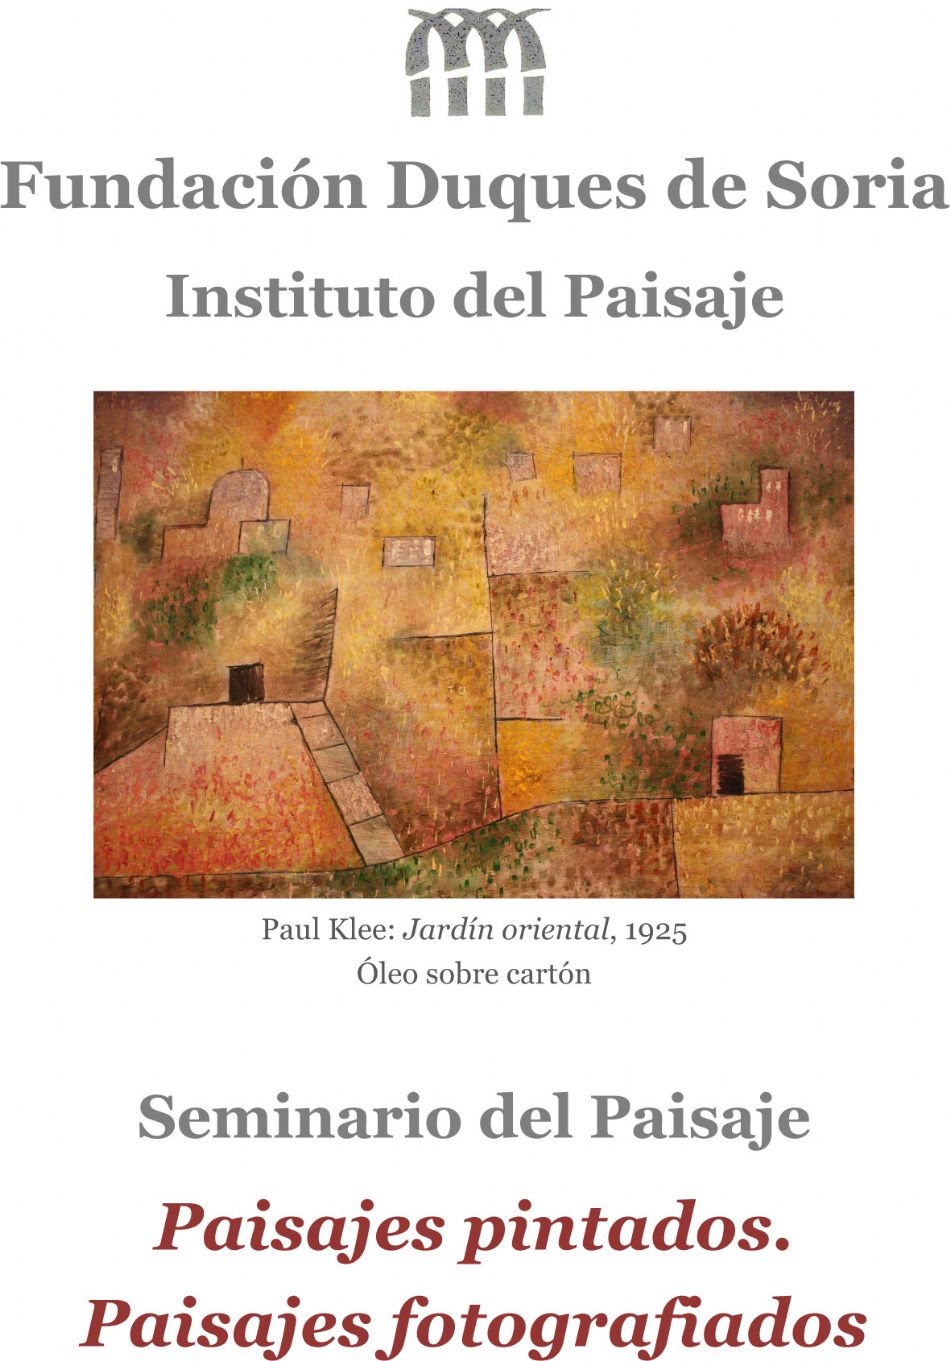 La Fundación Duques de Soria celebrará el Seminario del Paisaje del 10 al 12 de noviembre